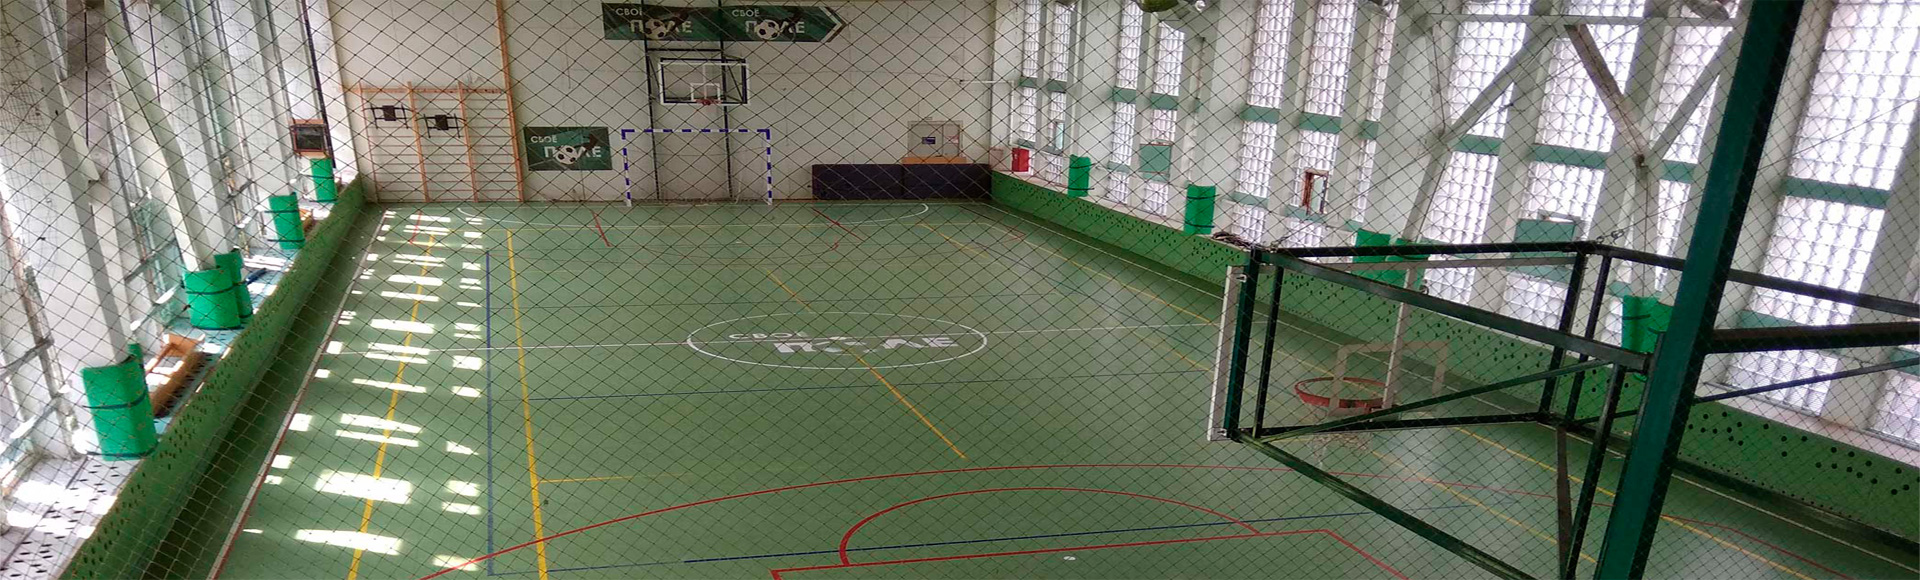 Зал для игры в мини-футбол  и баскетбол